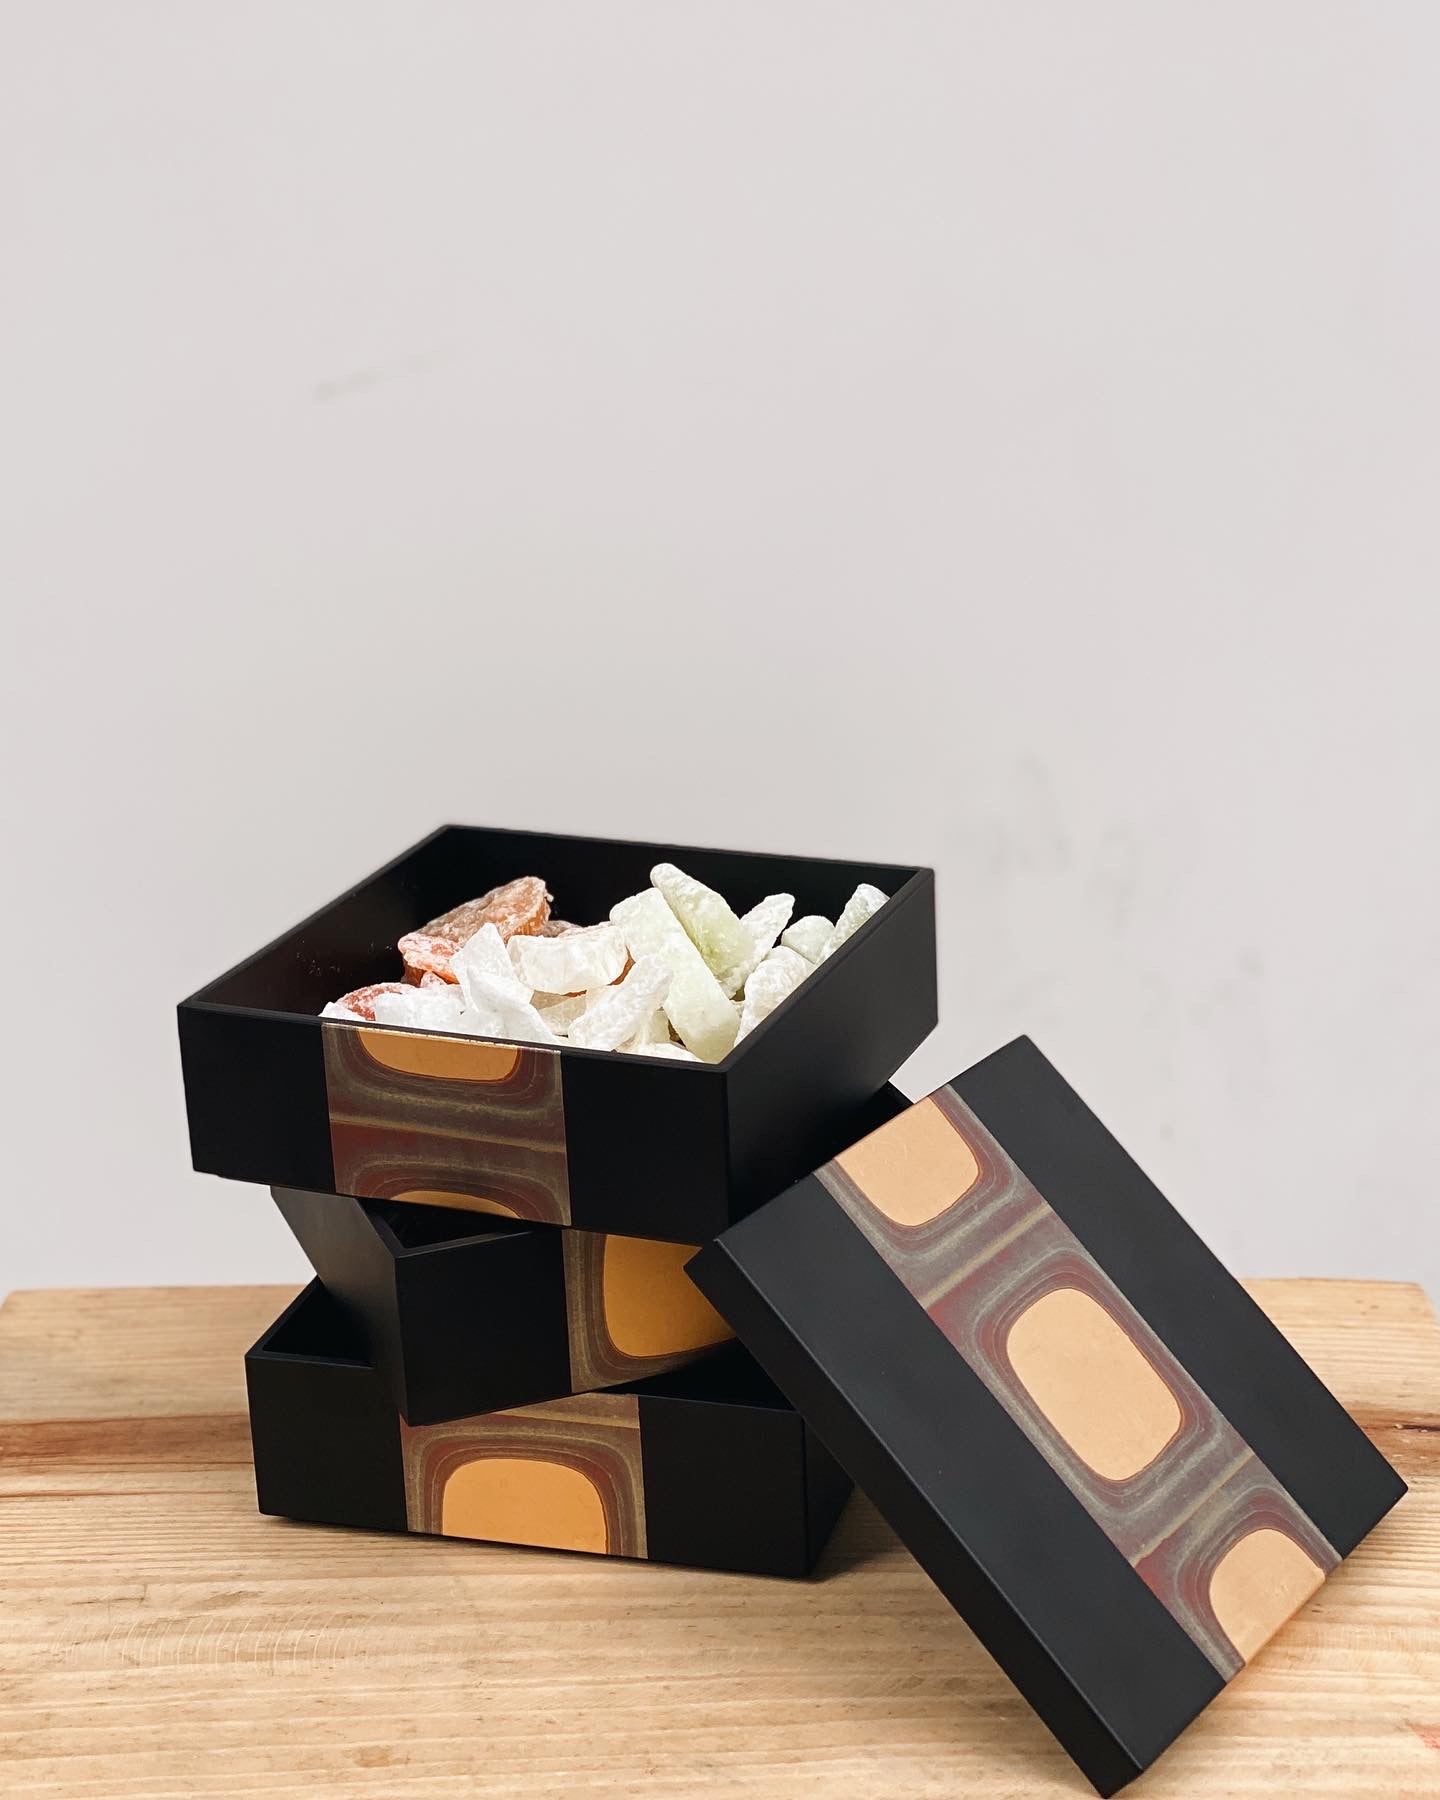 日本製 金澤古箔三層盒 | Made in Japan Hakuichi Ancient Foil Three-layer Box